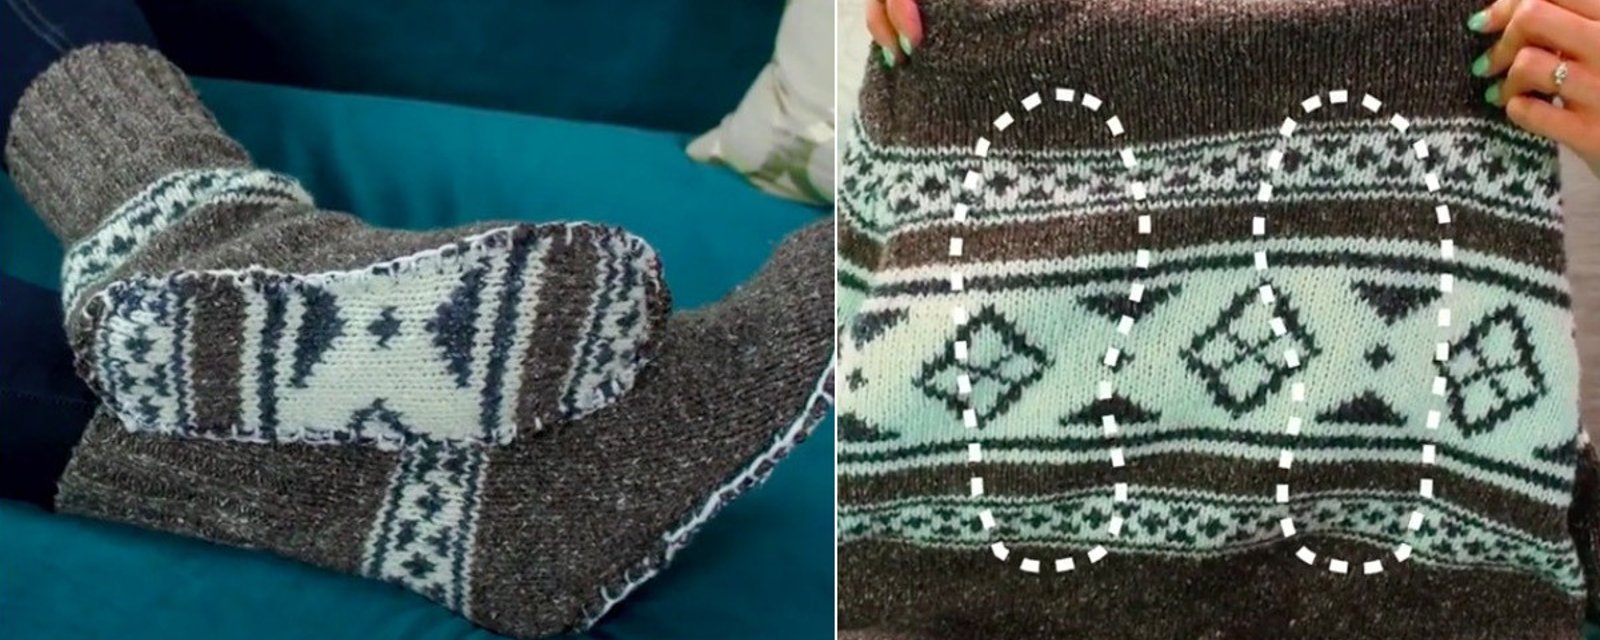 Récupérez vos vieux tricots et transformez-les en belles pantoufles chaudes